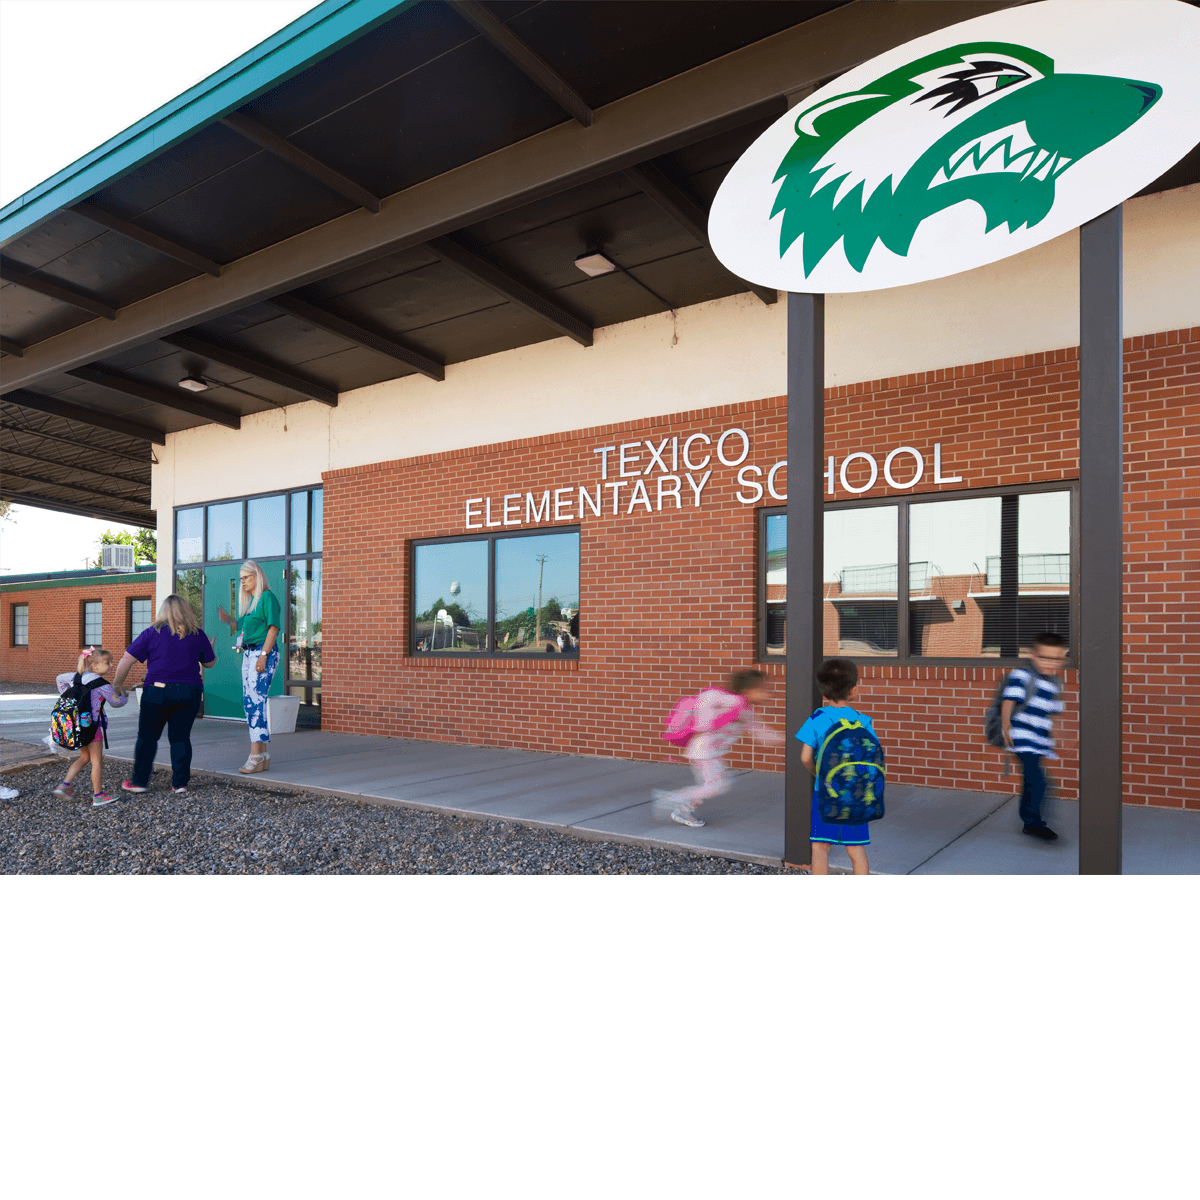 Texico Elementary School